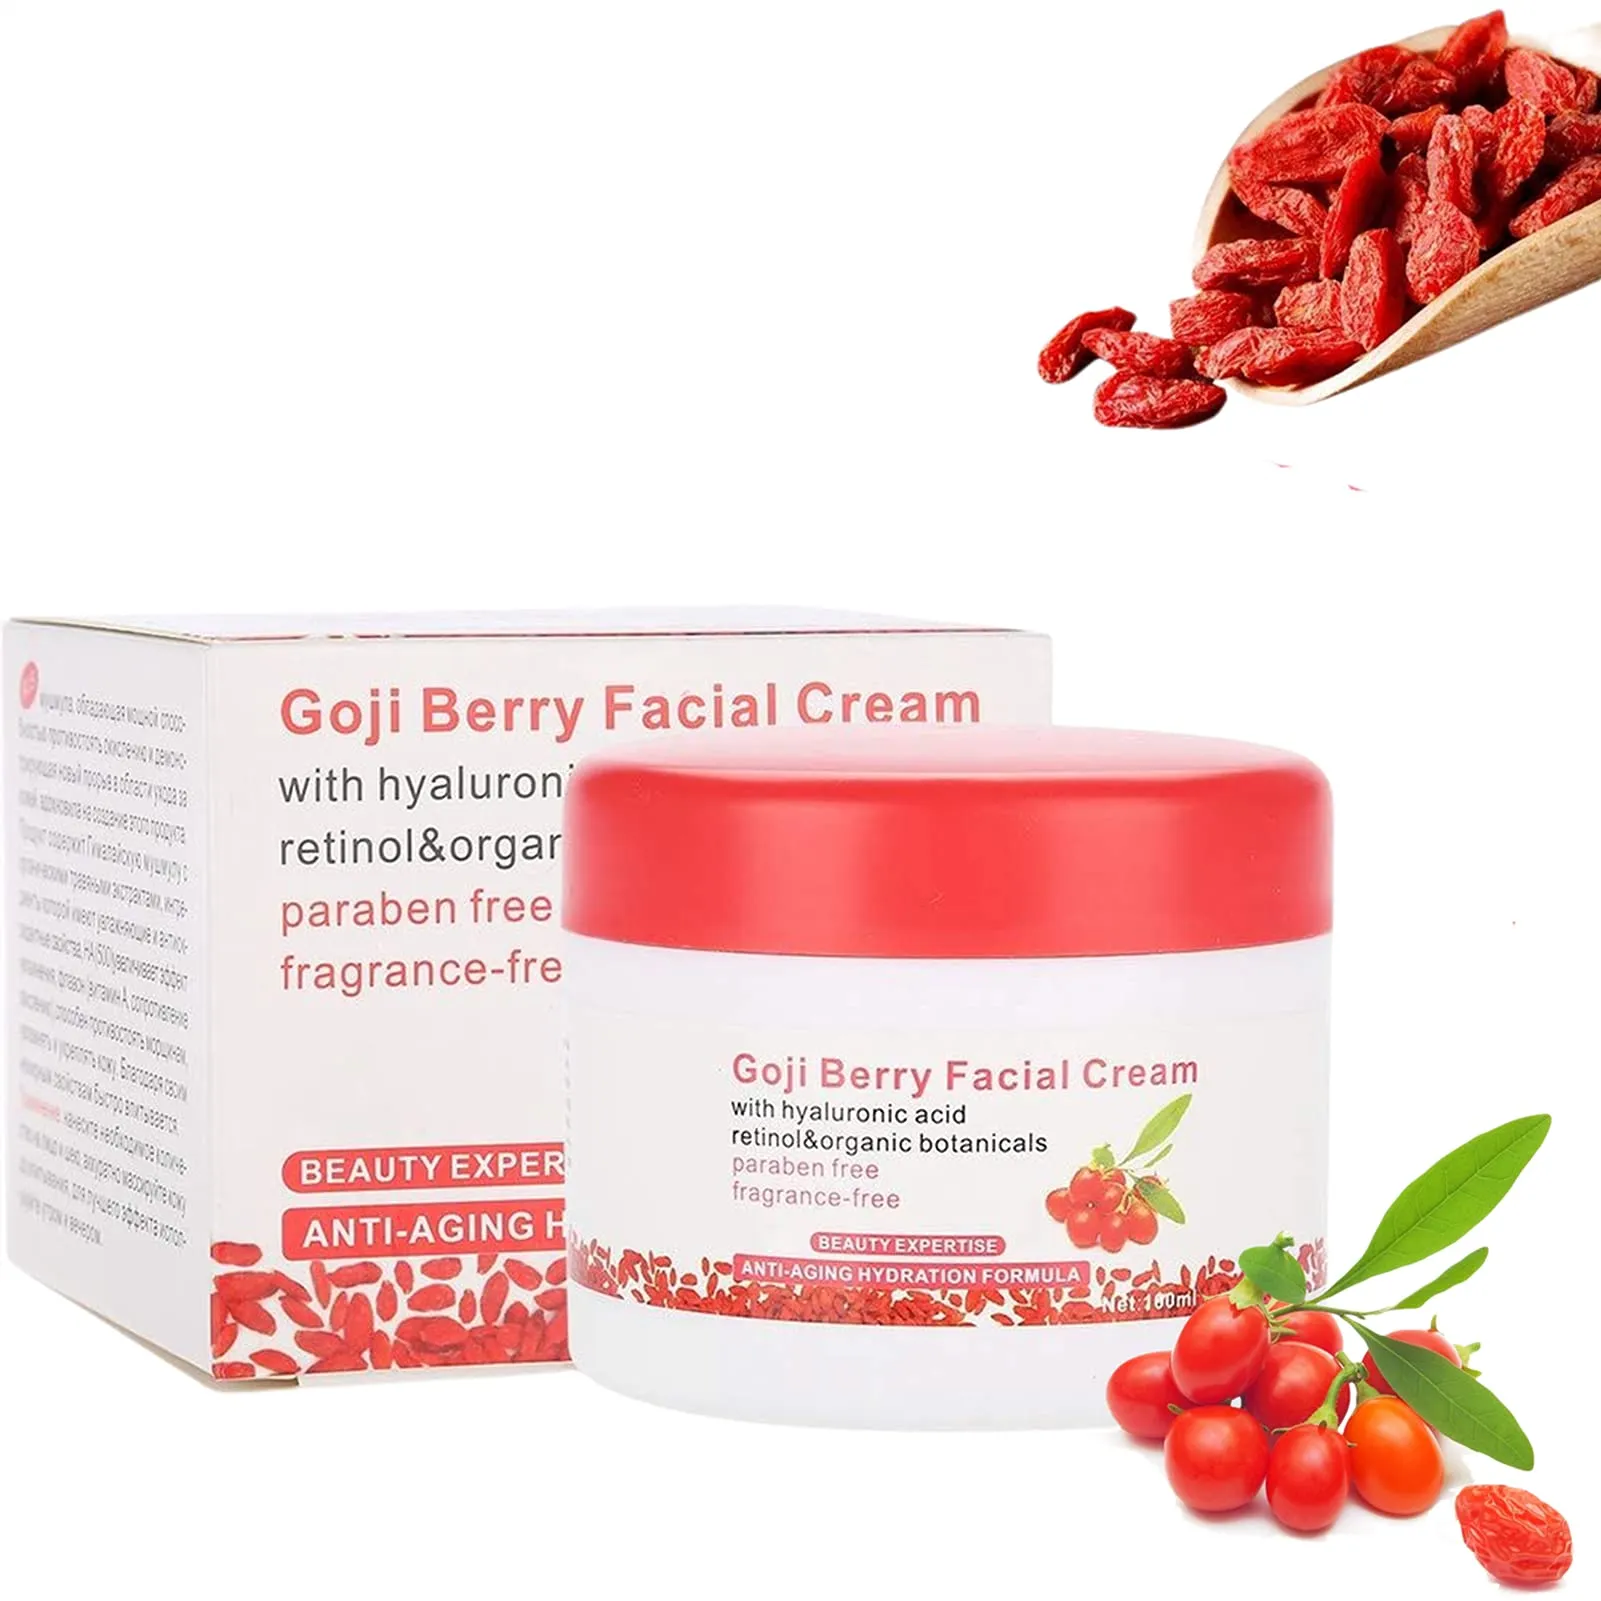 Goji Berry Facial Cream Review